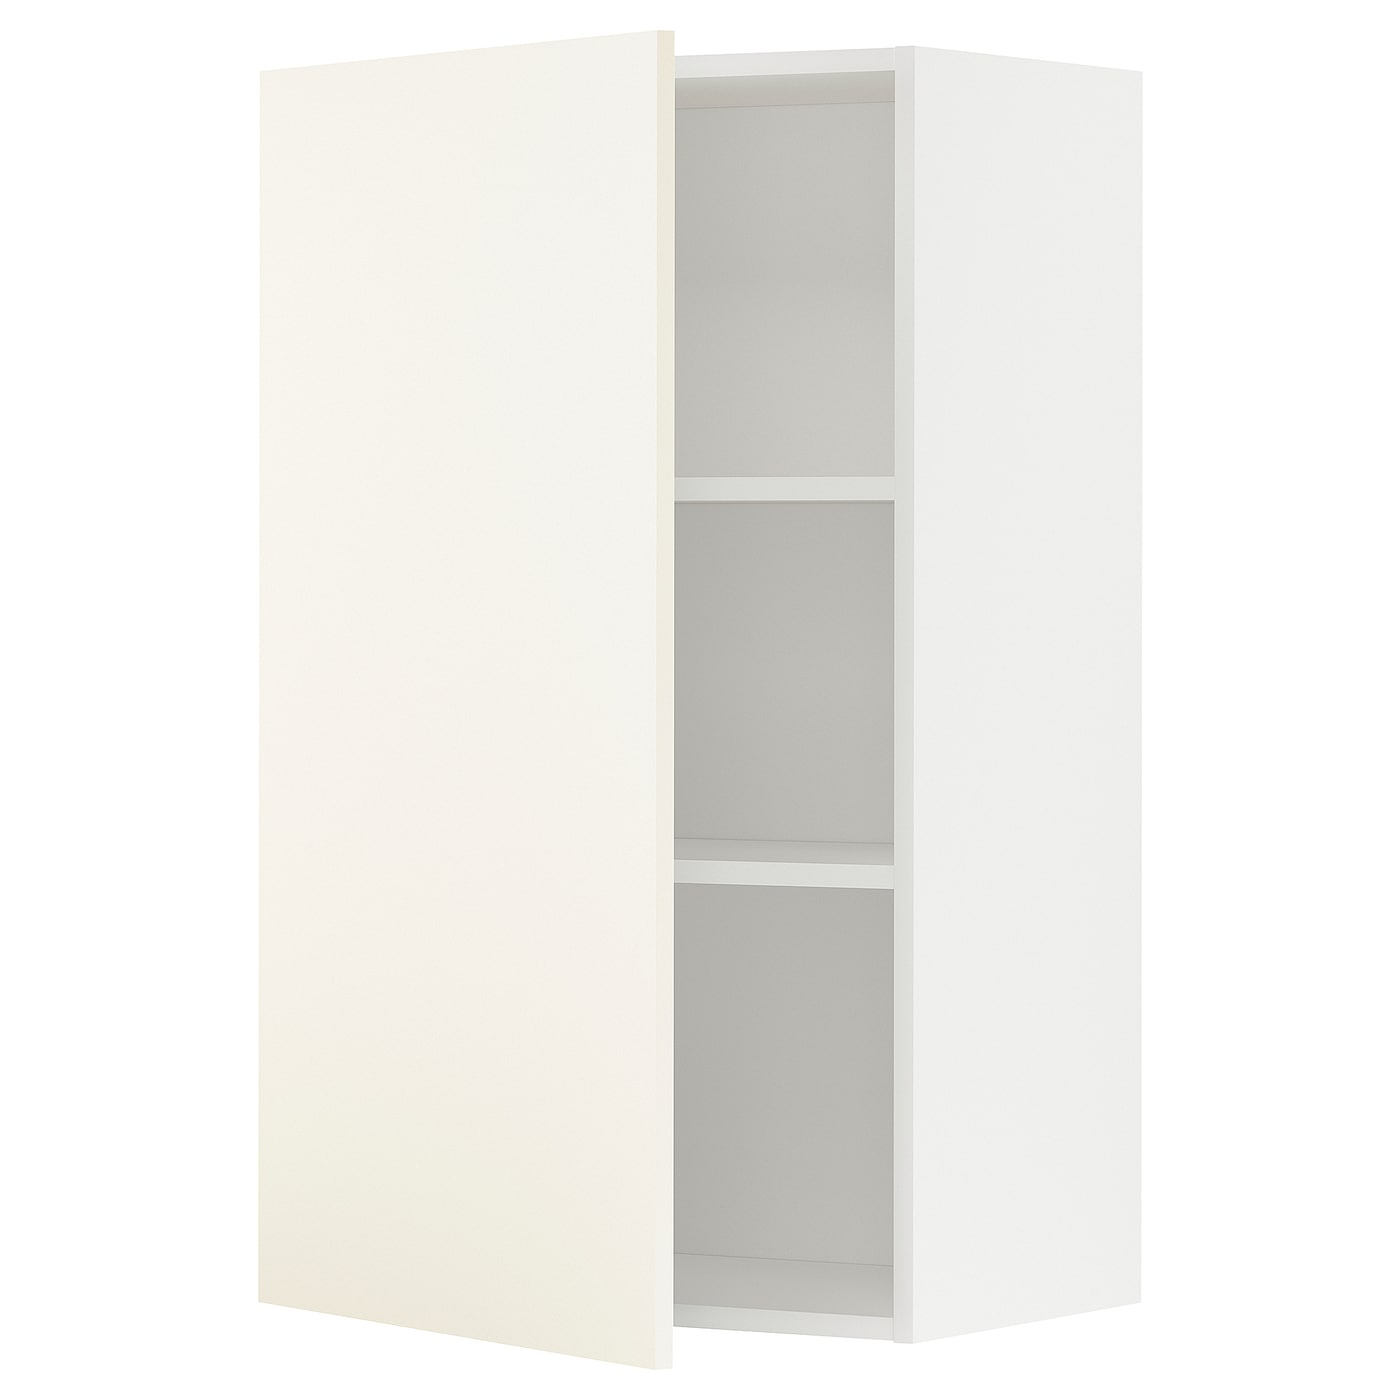 Навесной шкаф с полкой - METOD IKEA/ МЕТОД ИКЕА, 100х60 см, белый/светло-бежевый